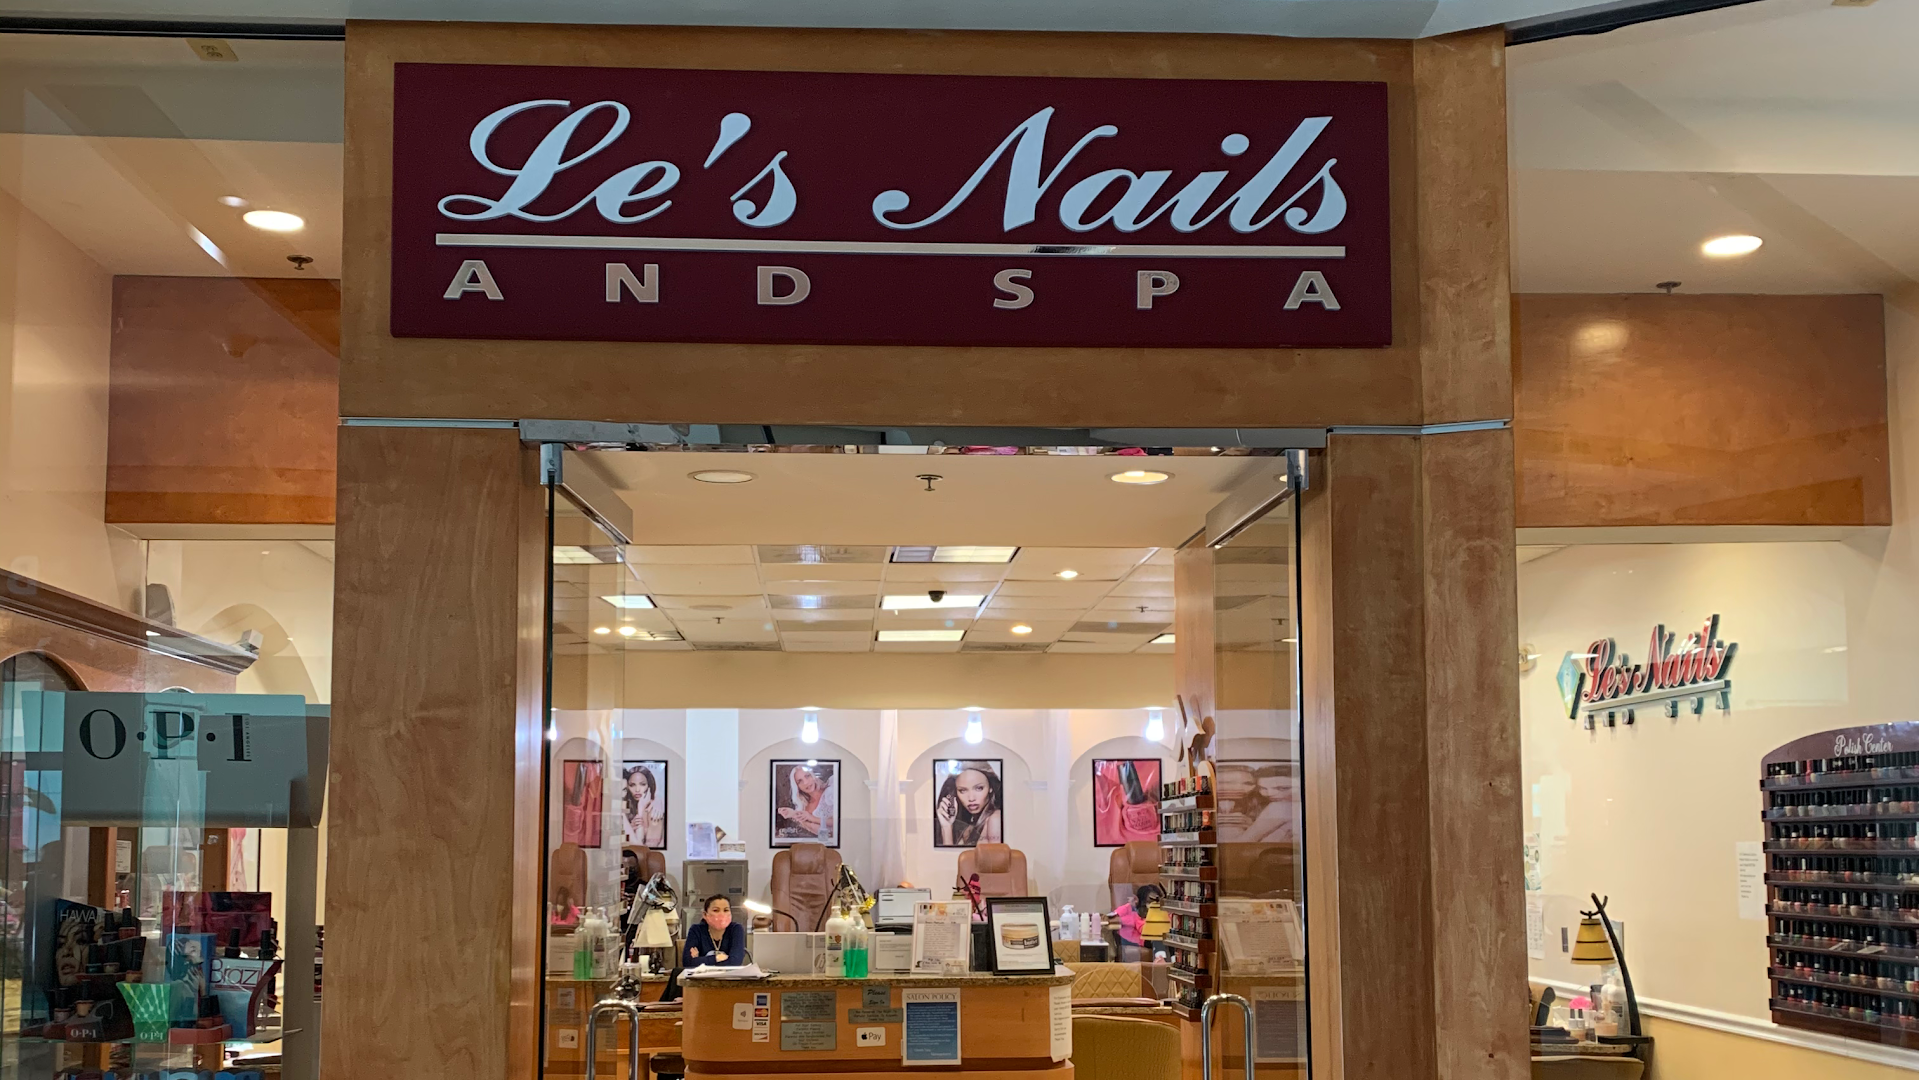 Le's Nails & Spa